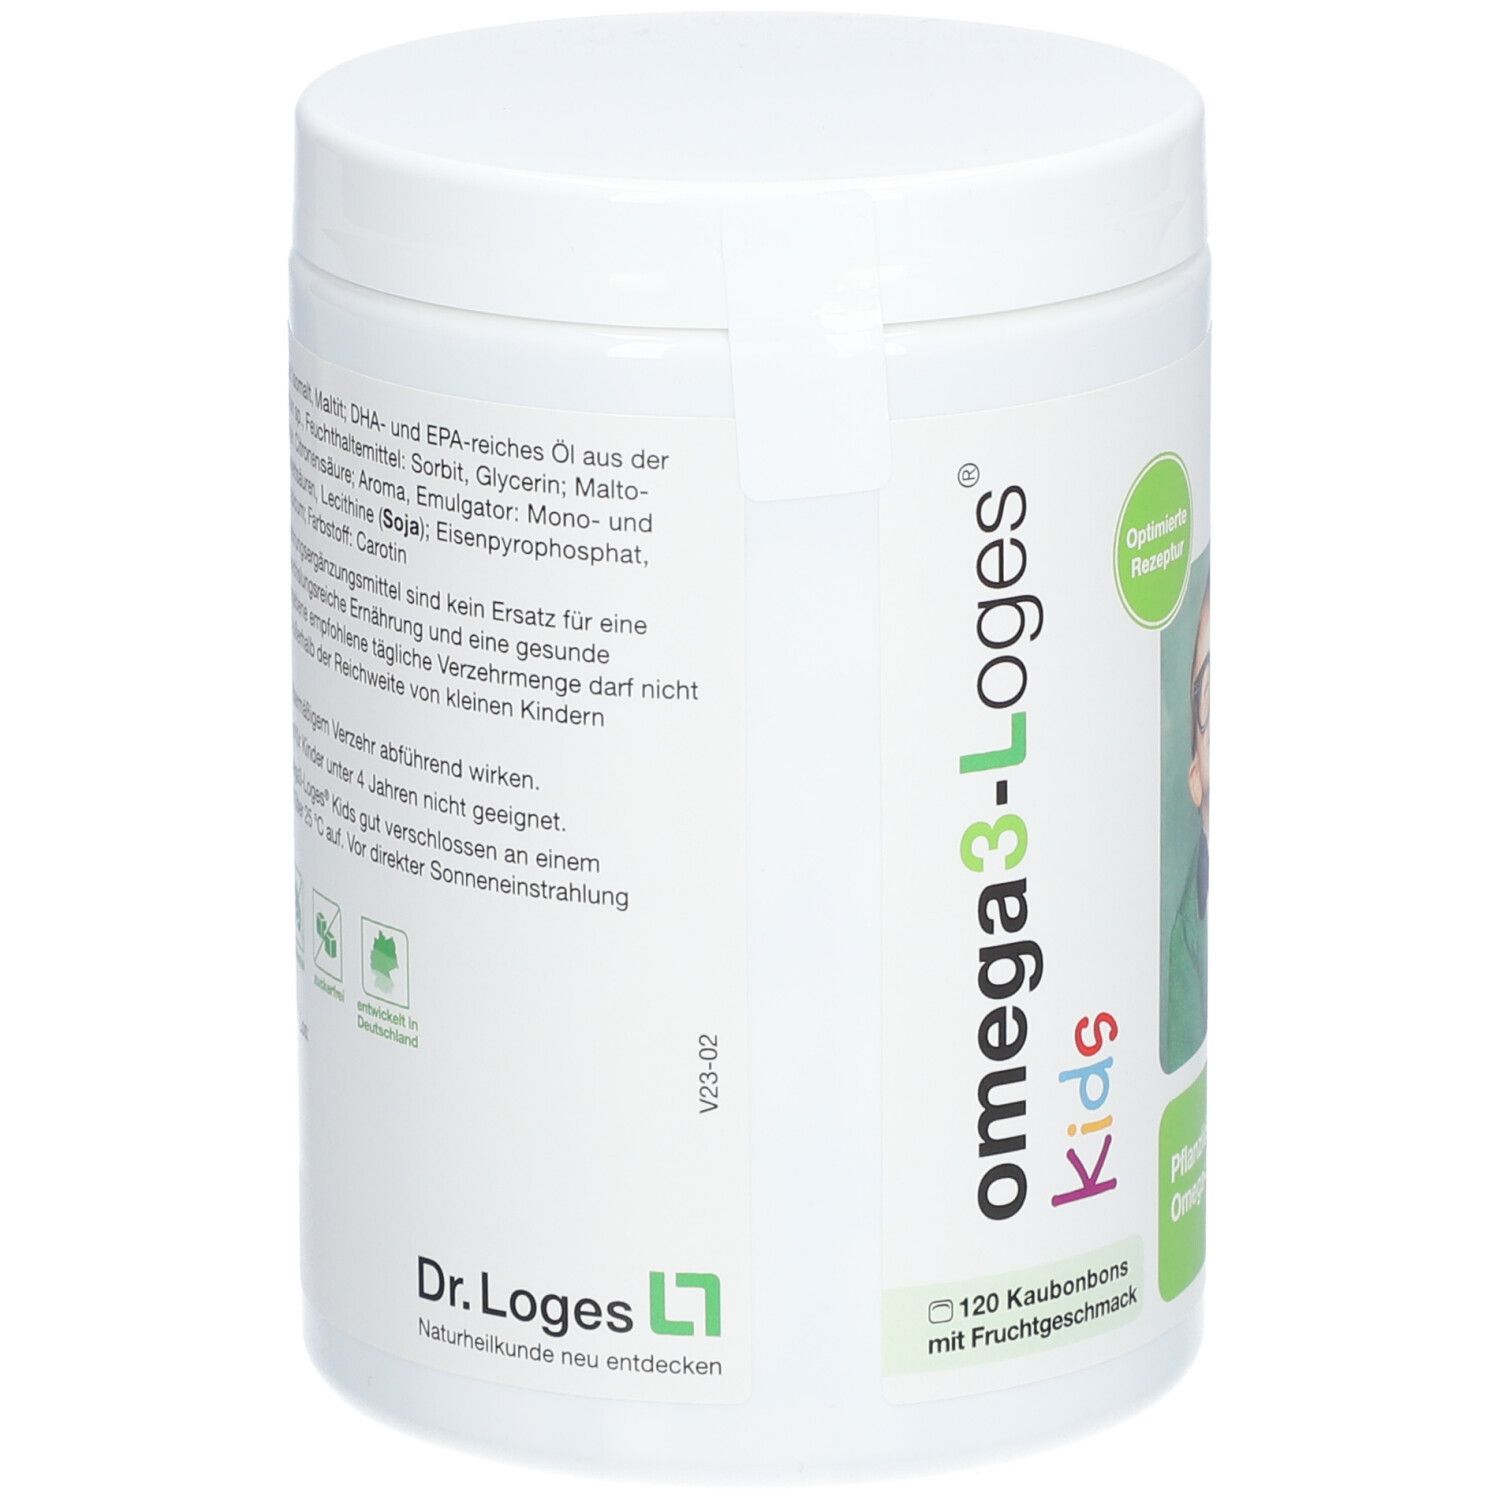 omega3-Loges® Kids